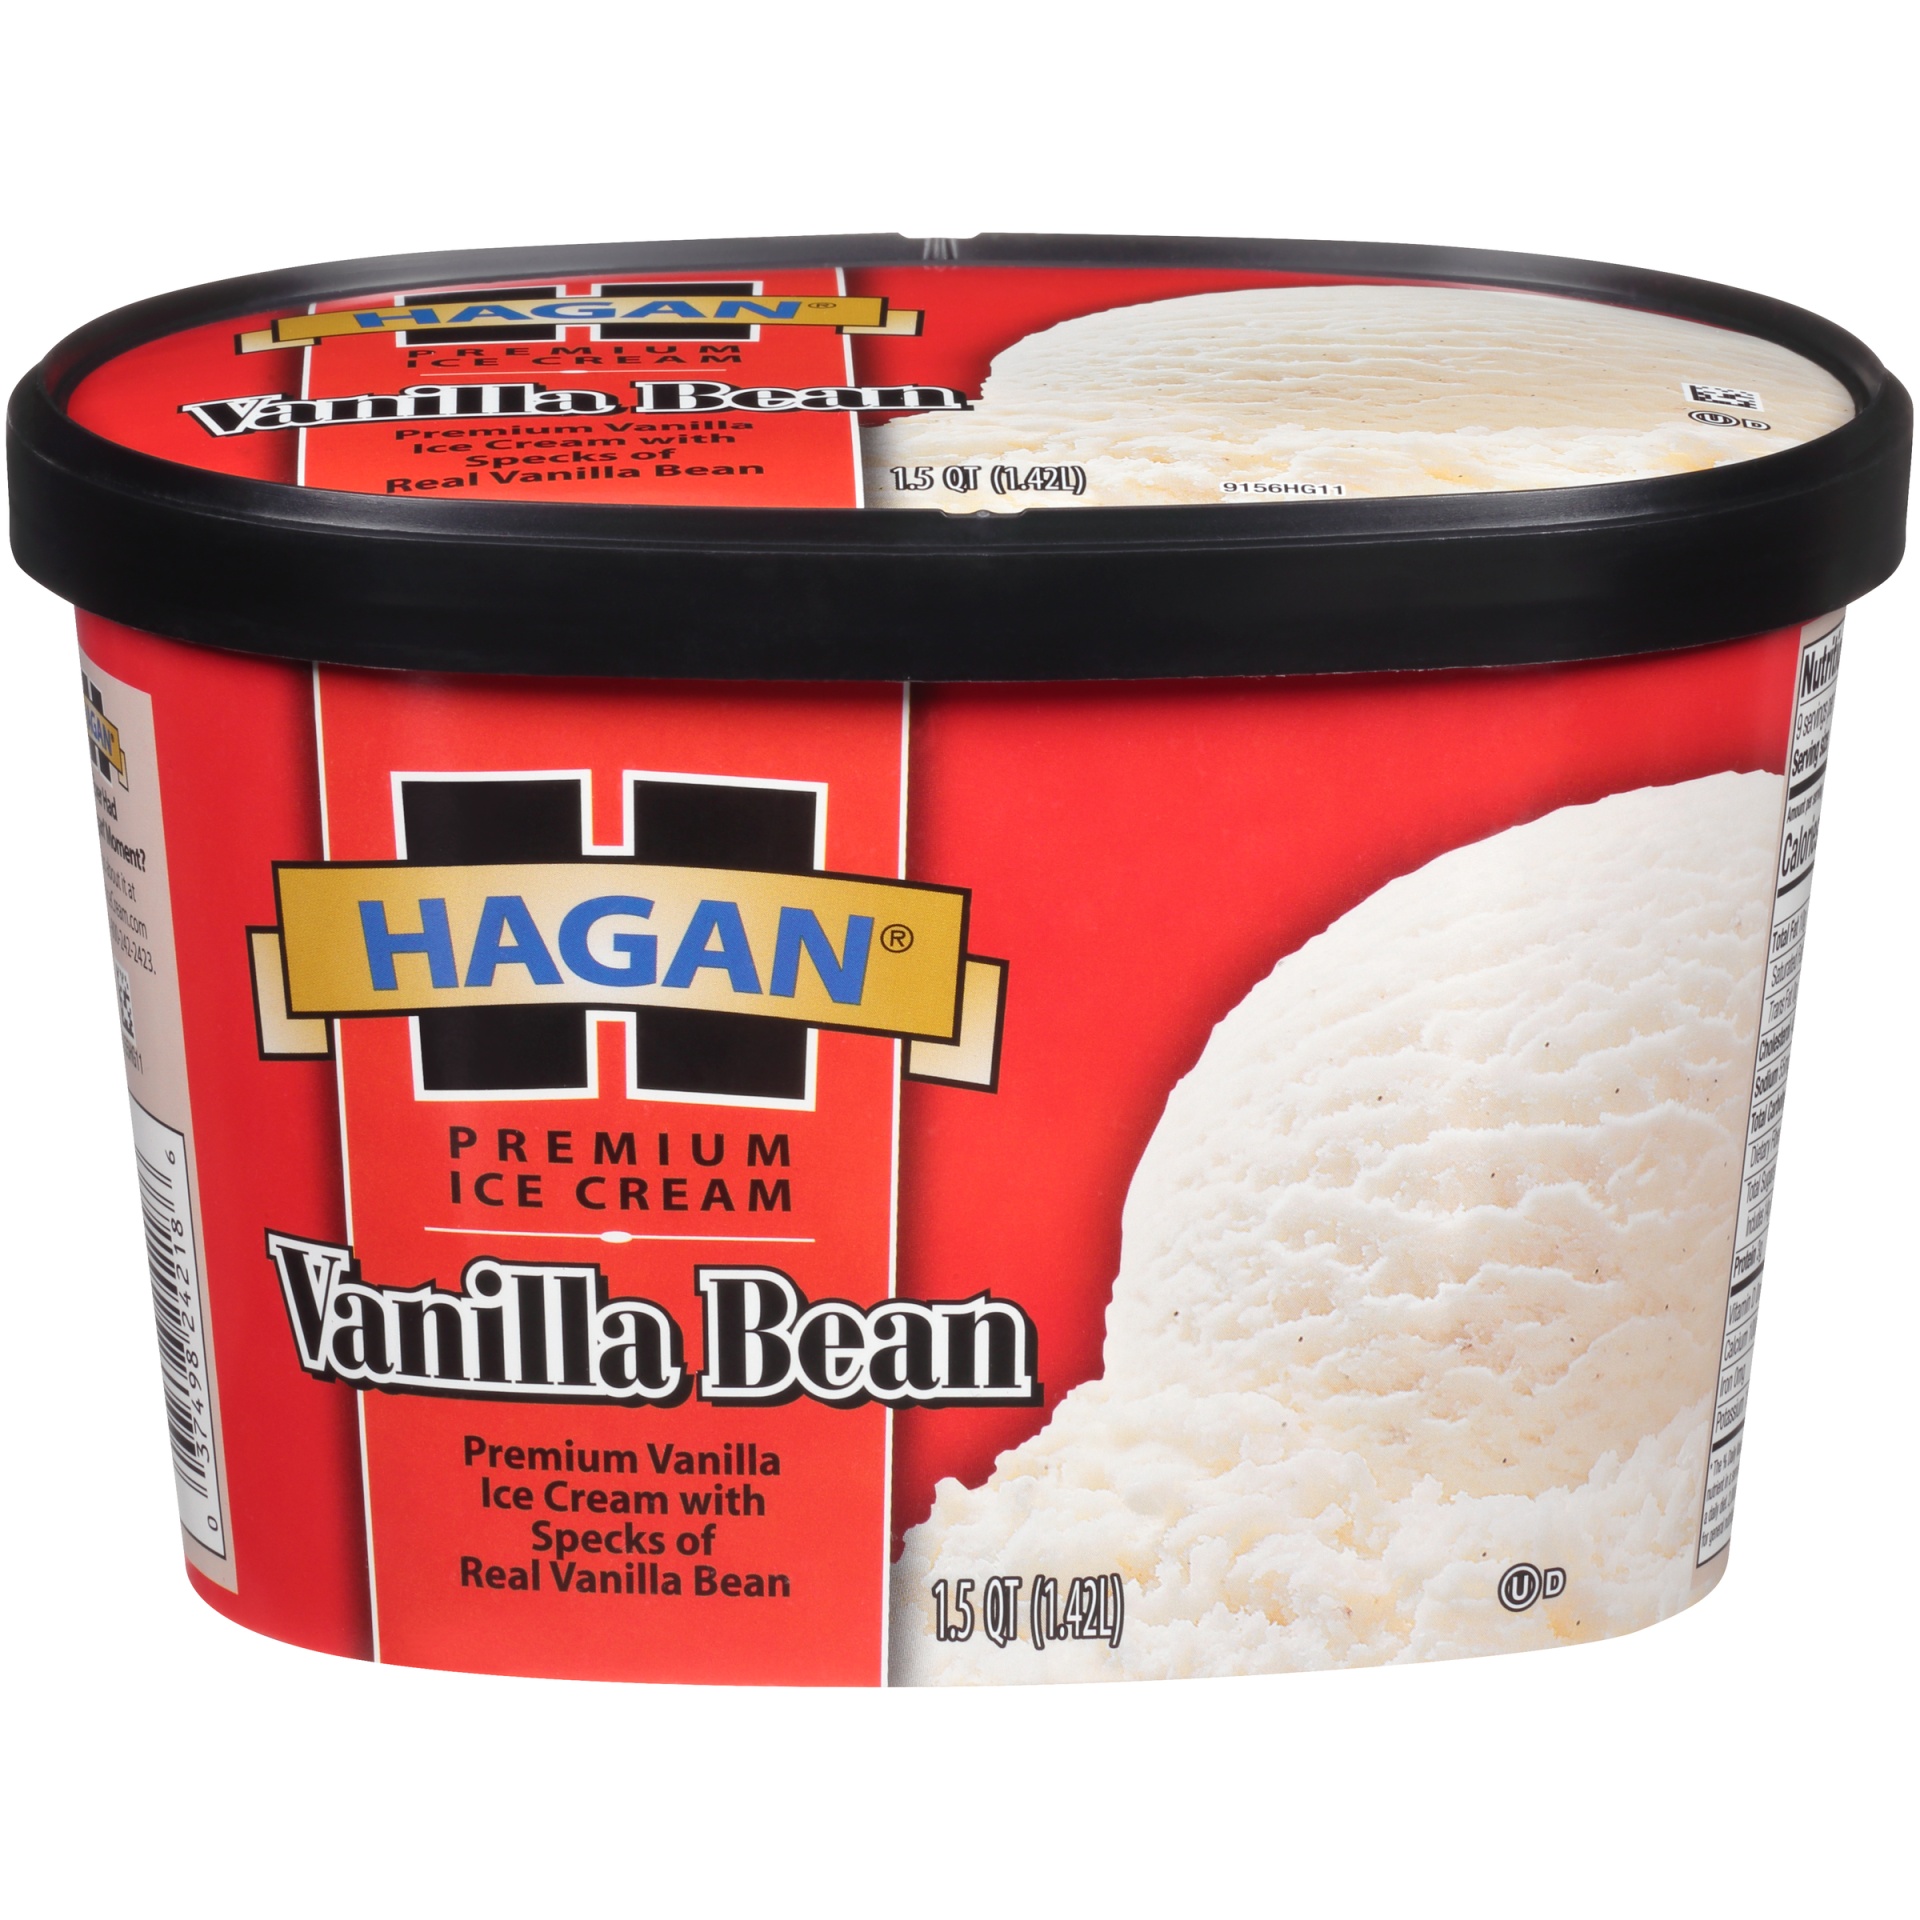 slide 1 of 7, Hagan Vanilla Bean Premium Ice Cream, 1.5 qt